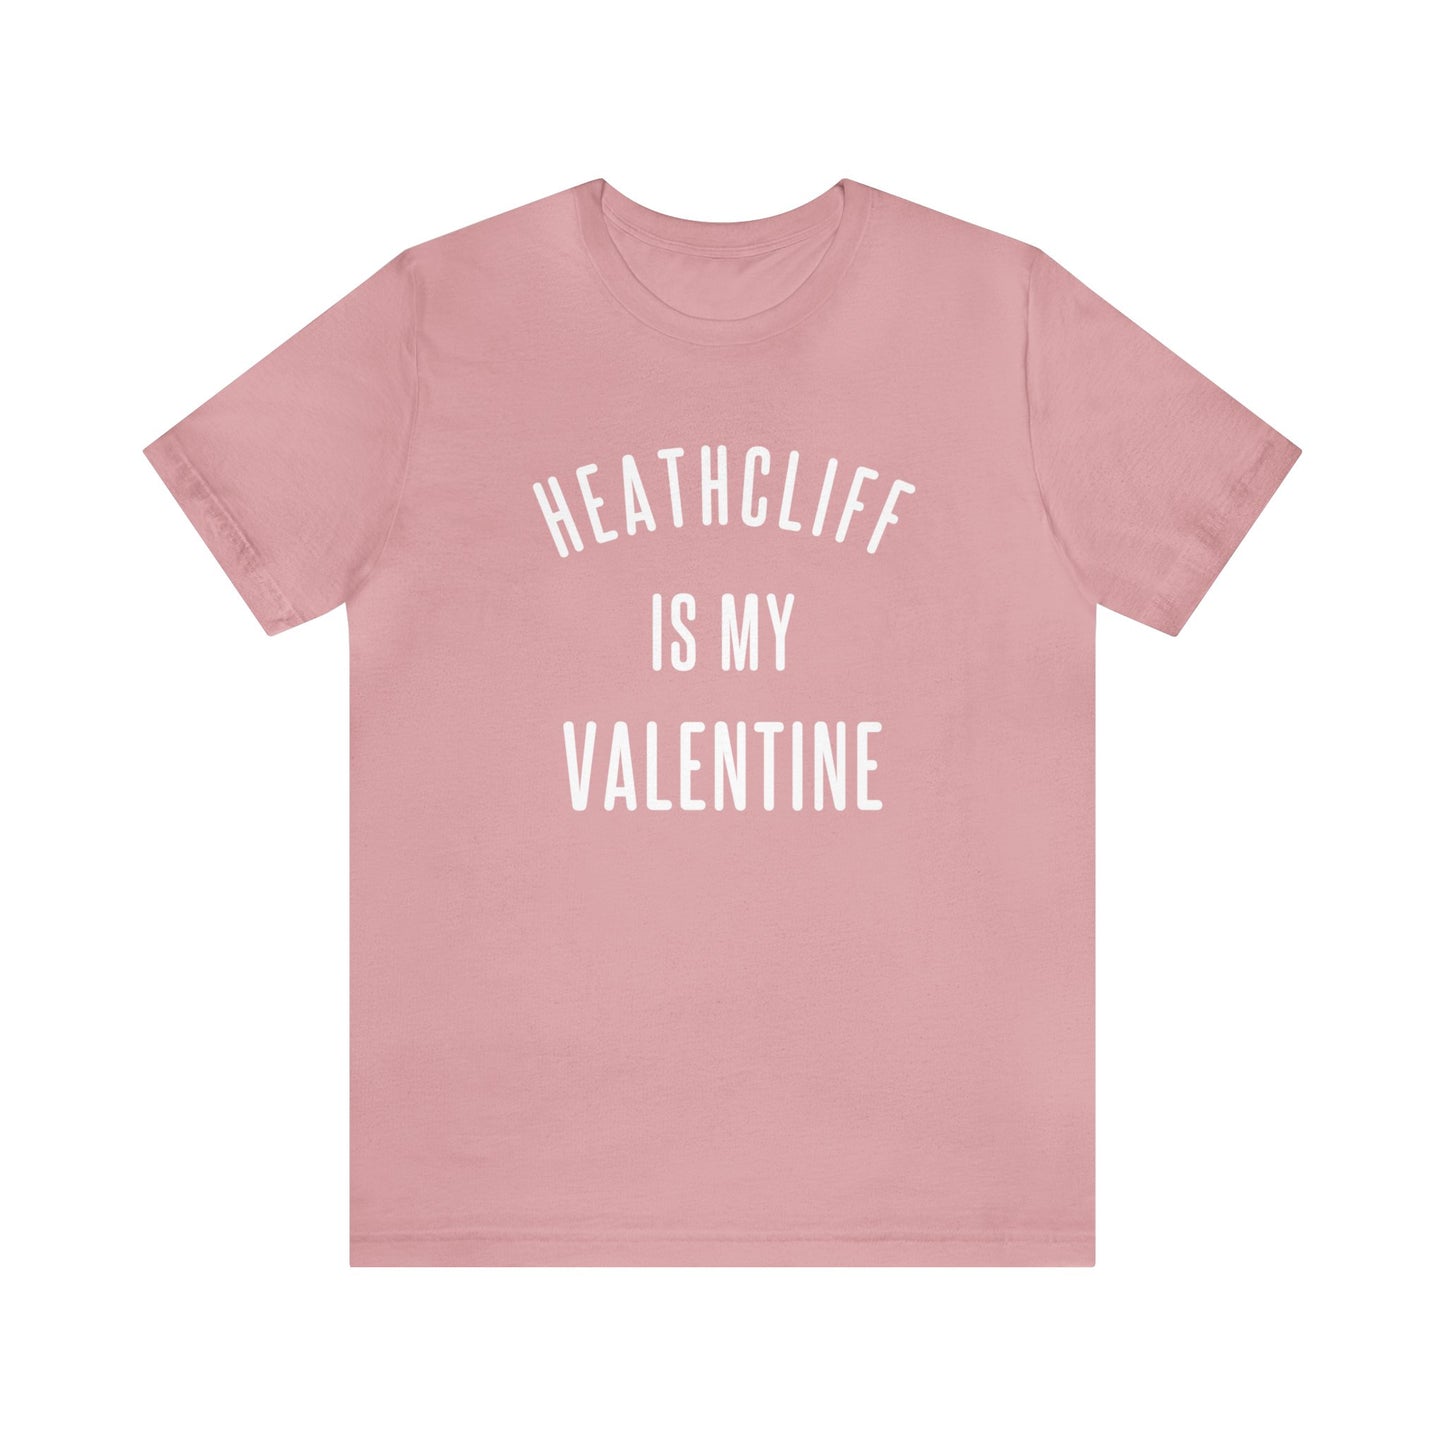 Heathcliff is my Valentine Short Sleeve Tee